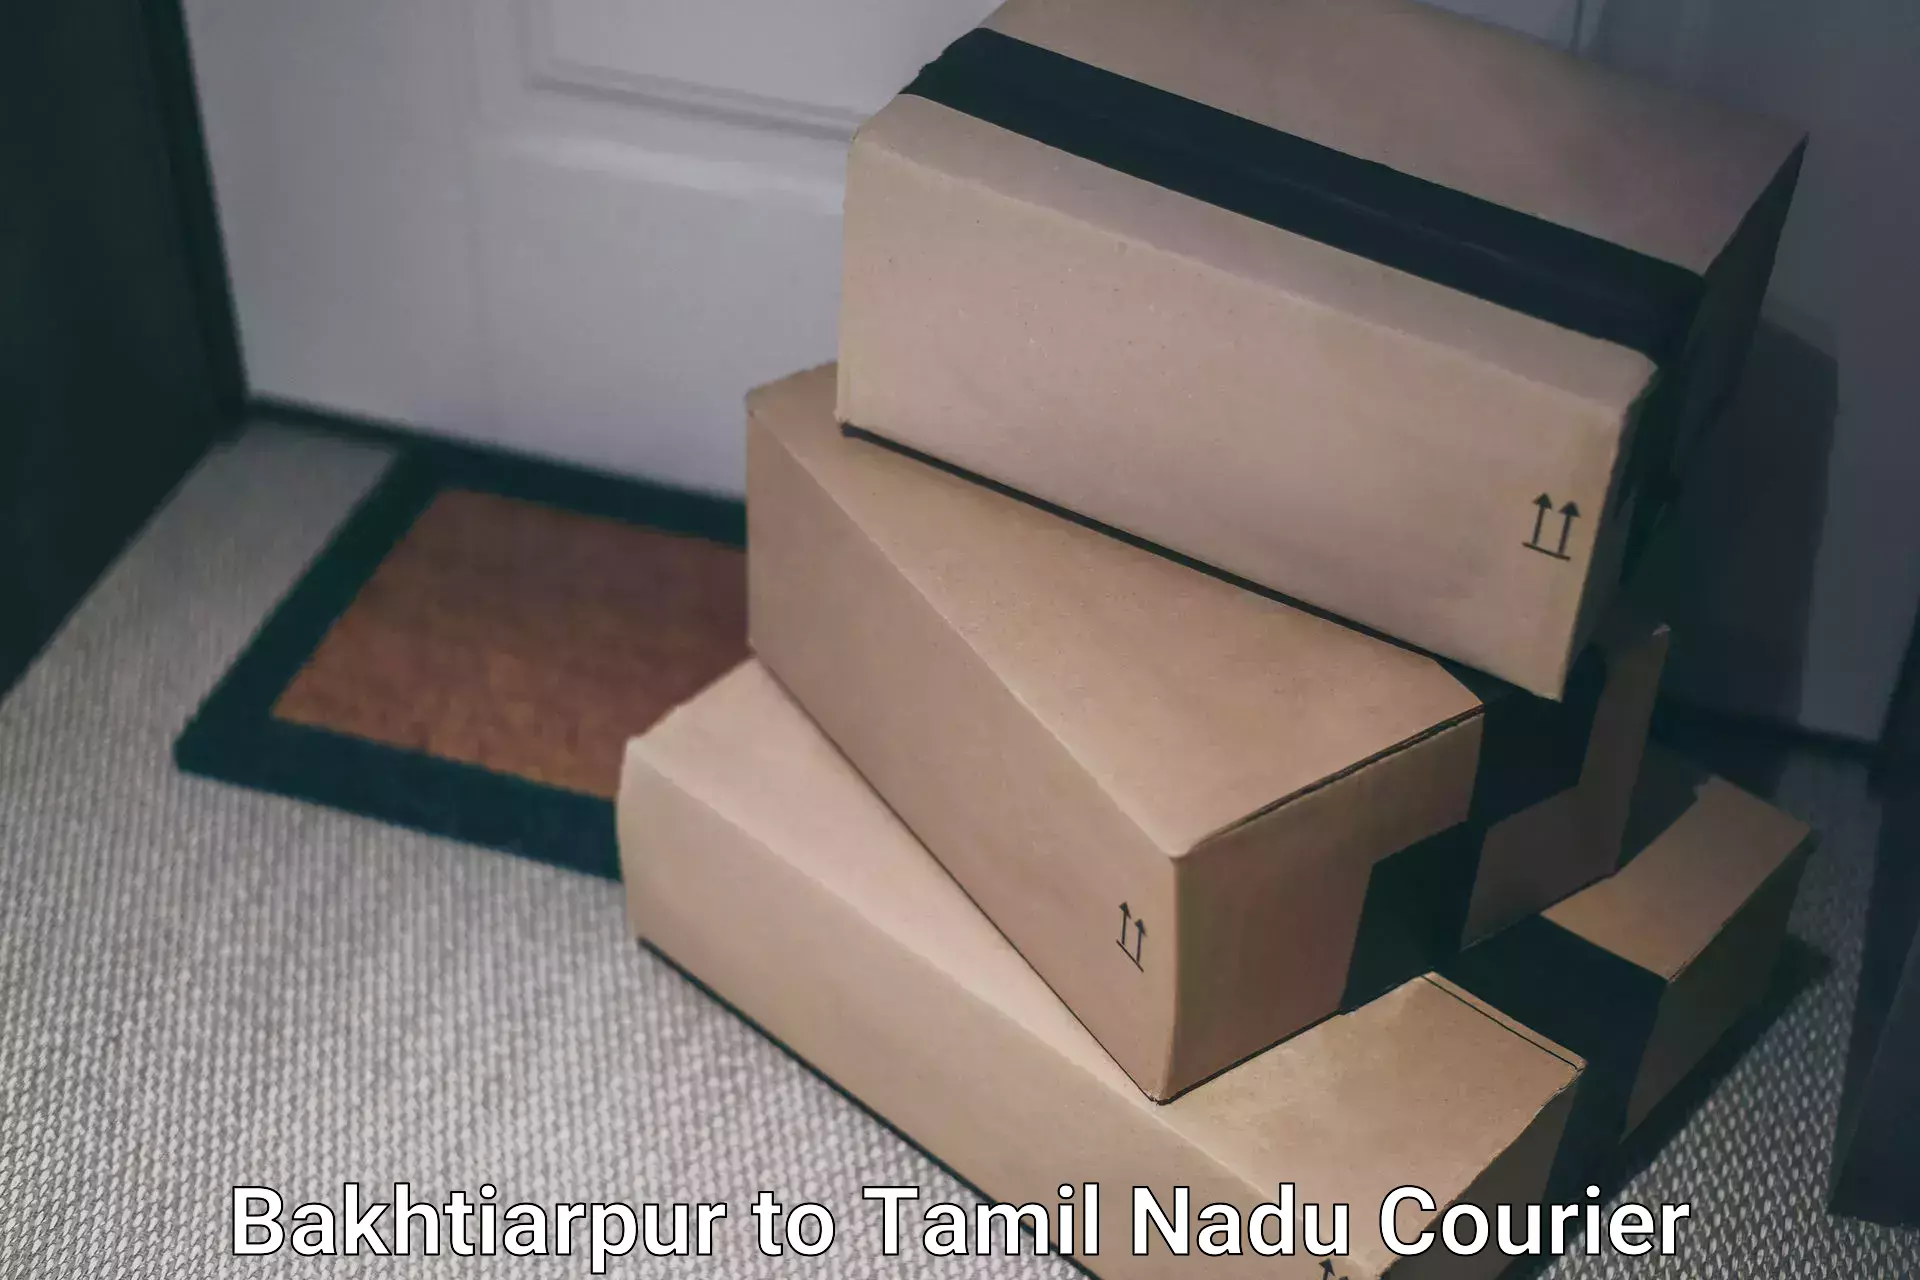 Versatile courier offerings Bakhtiarpur to IIIT Tiruchirappalli